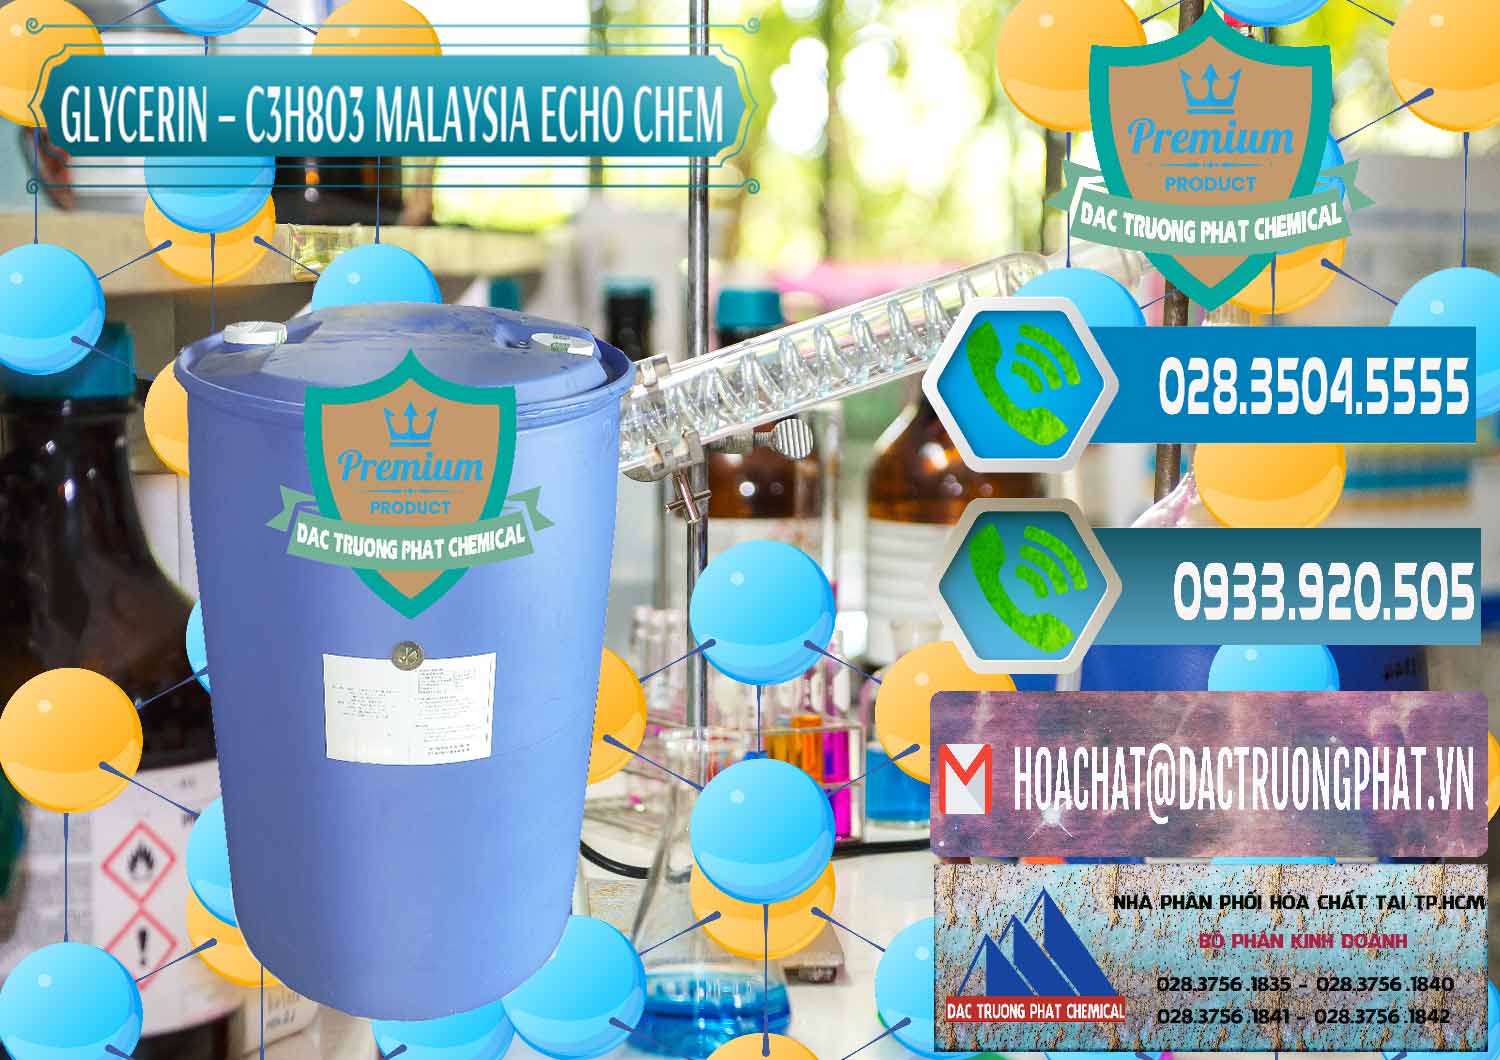 Nơi chuyên bán _ cung cấp Glycerin – C3H8O3 99.7% Echo Chem Malaysia - 0273 - Nhà nhập khẩu _ cung cấp hóa chất tại TP.HCM - congtyhoachat.net